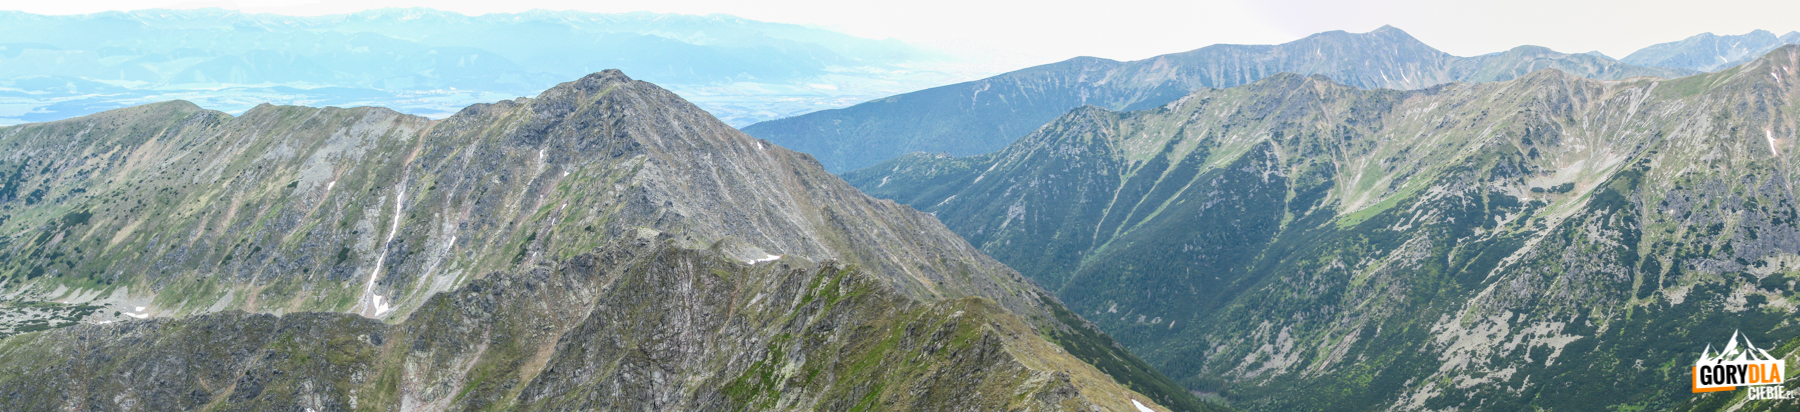 Widok z Bystrej (2248 m) na Zadnią Kopę (2162 m) i Dolinę Raczkową